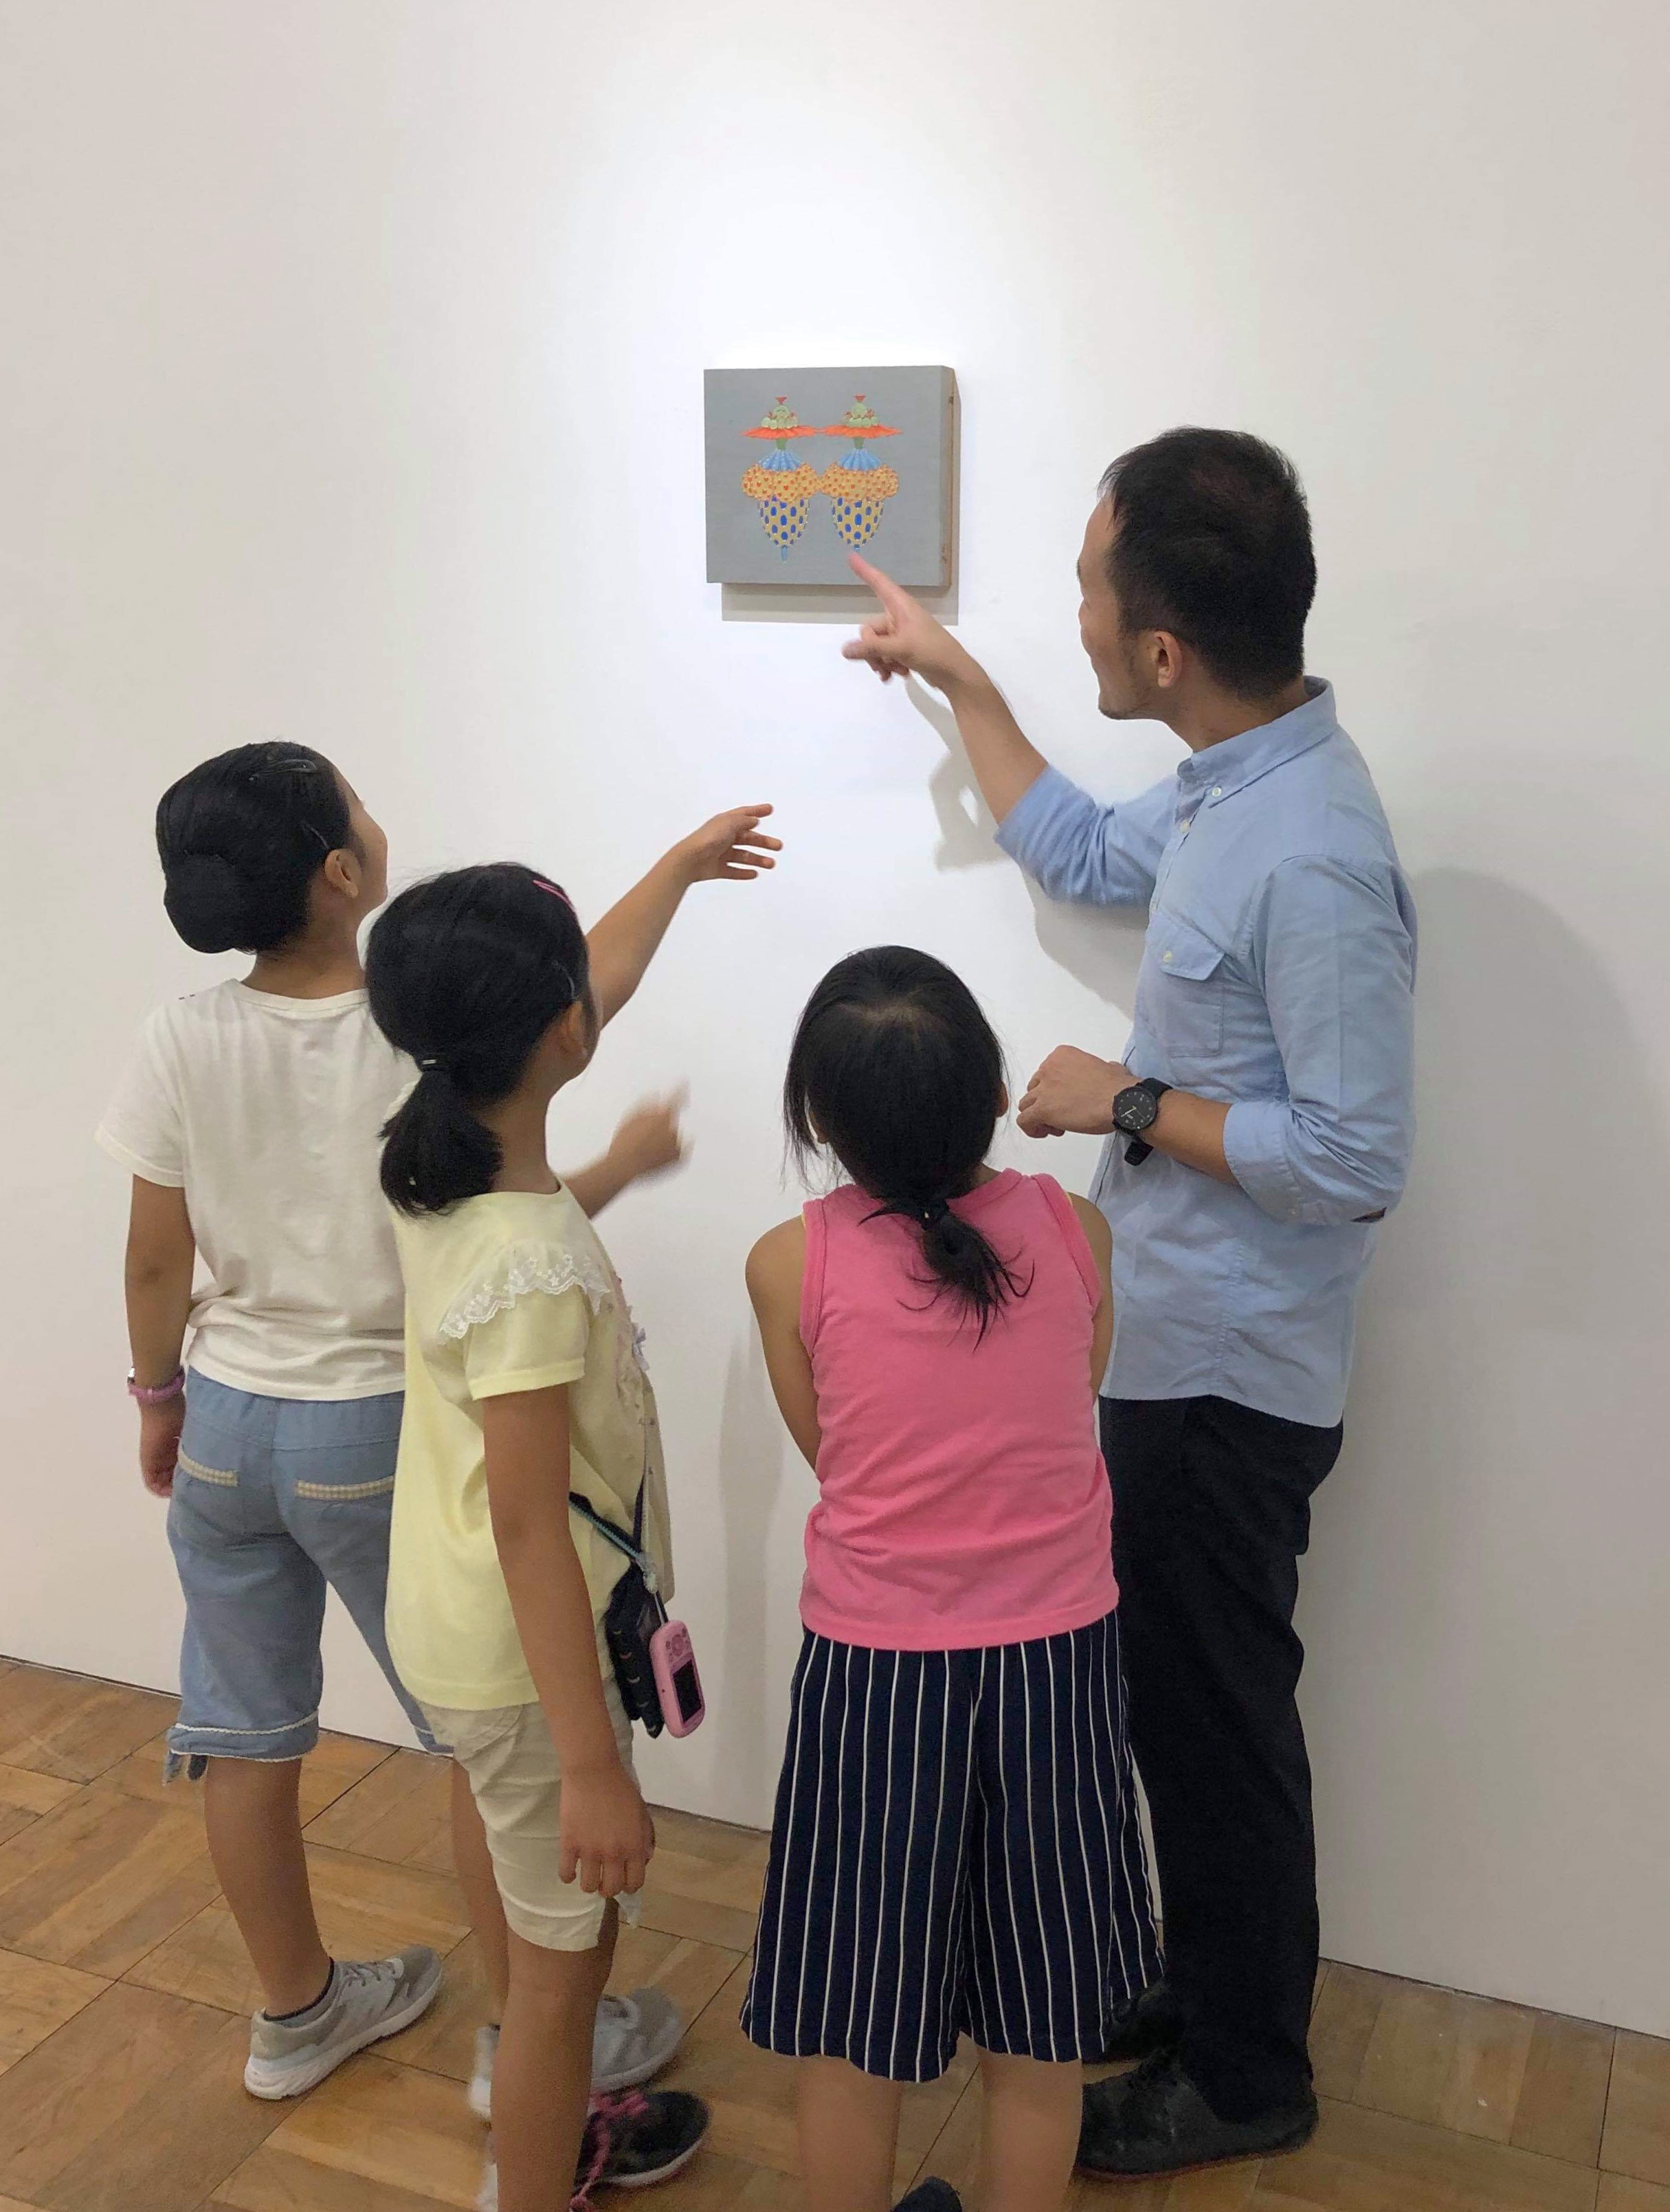 アーツ千代田3331にて開催されたアートサマーワークショップの対話型美術鑑賞